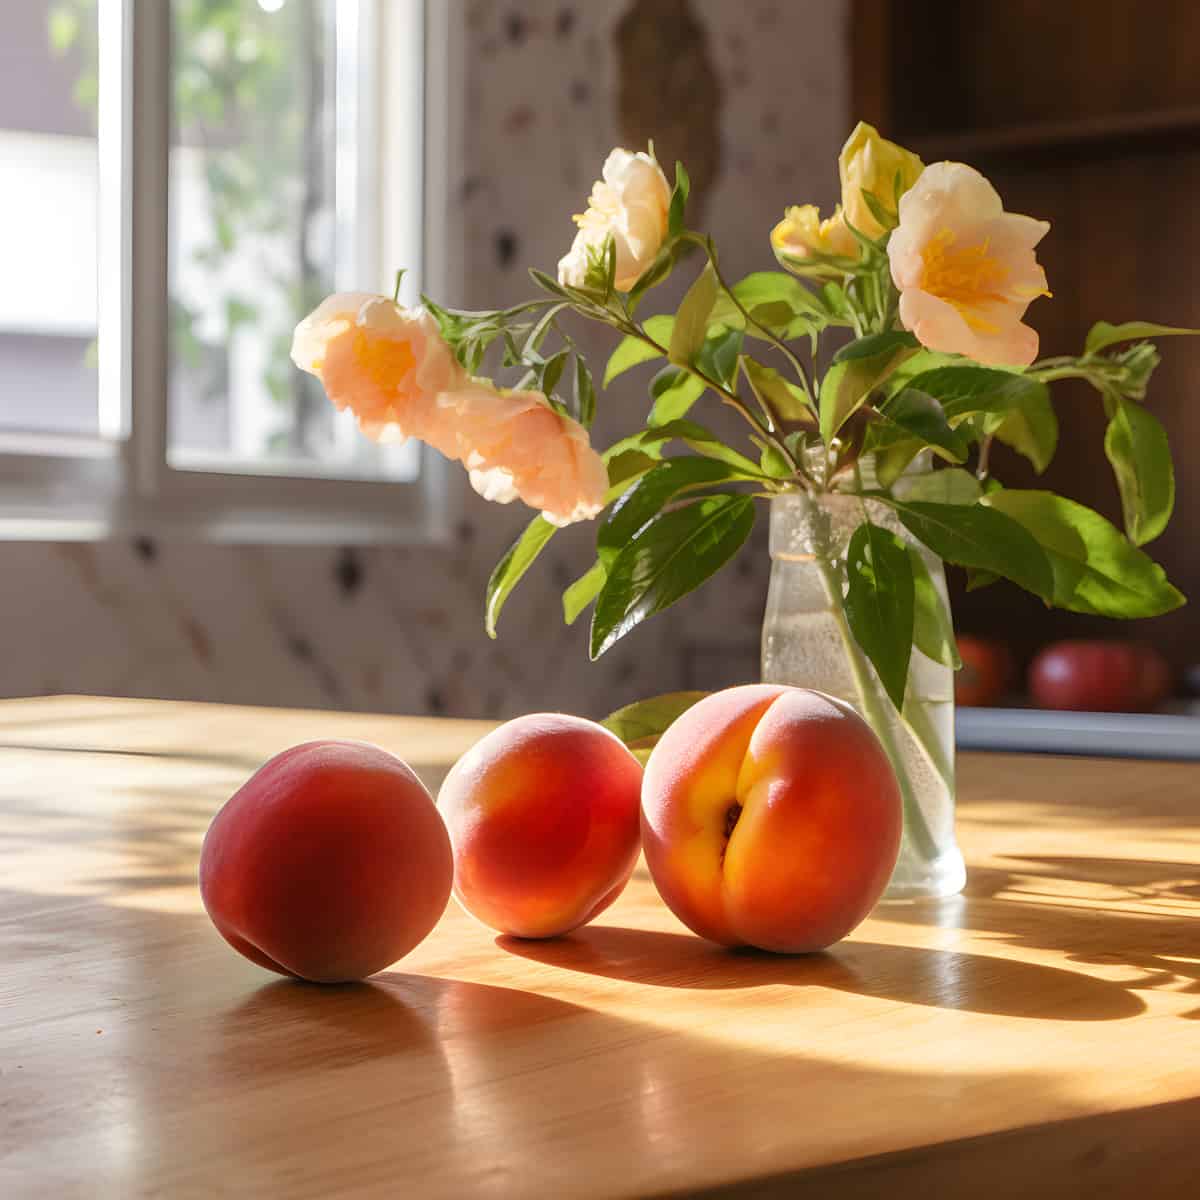 Wild Peach on a kitchen counter